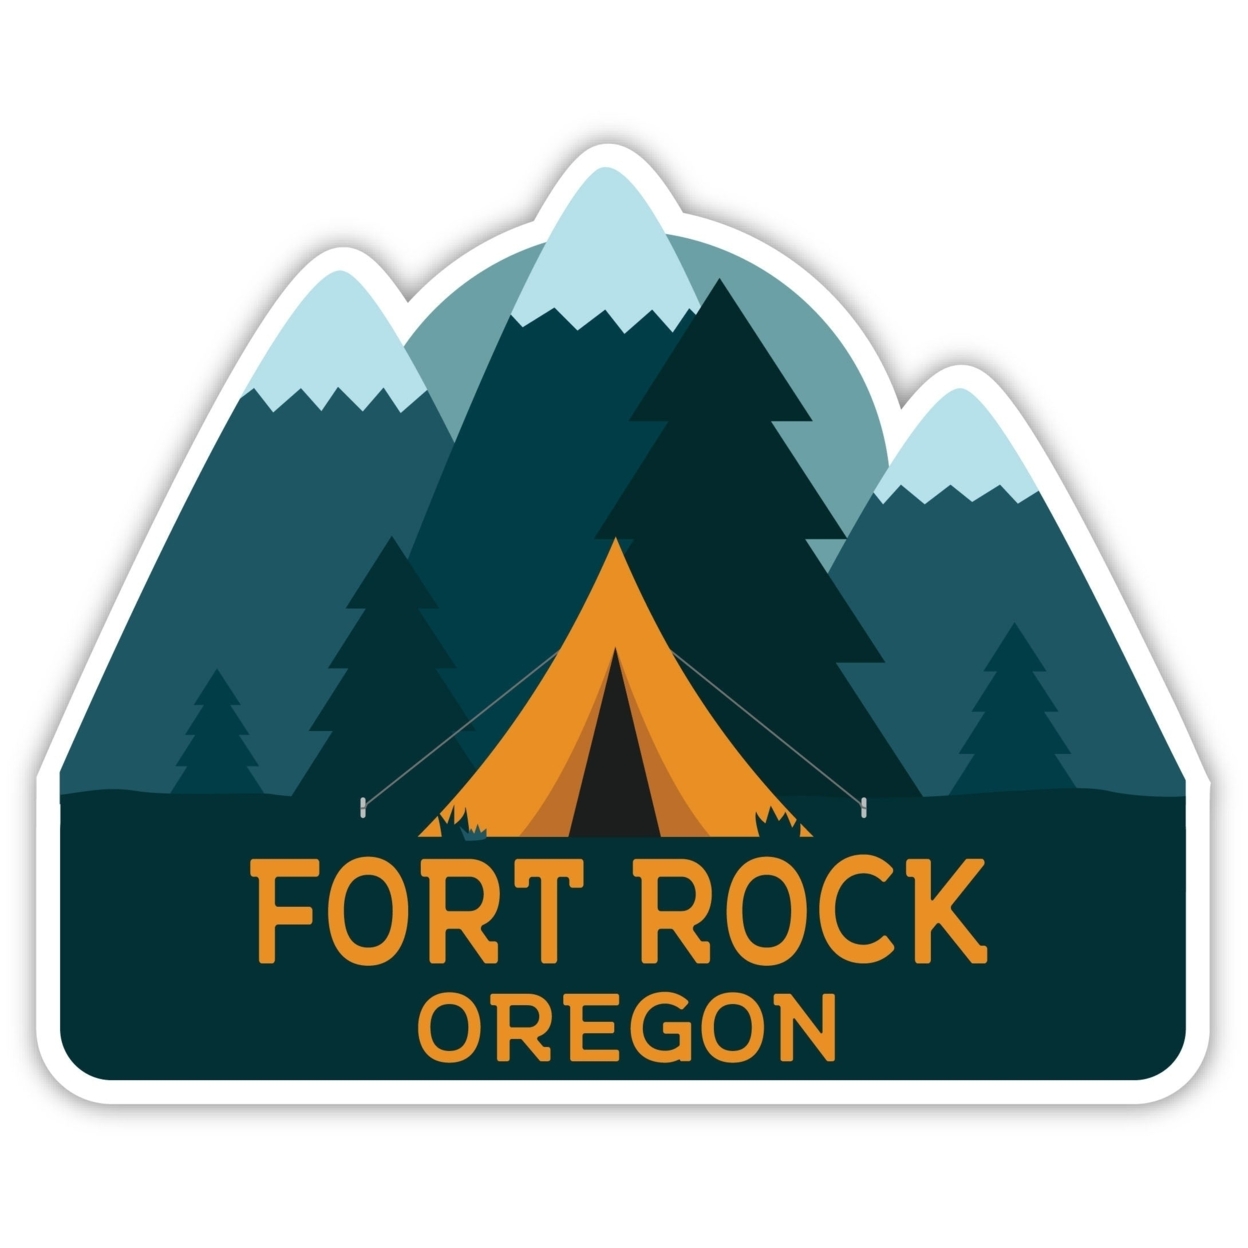 Fort Rock Oregon Souvenir Decorative Stickers (Choose Theme And Size) - Single Unit, 8-Inch, Tent